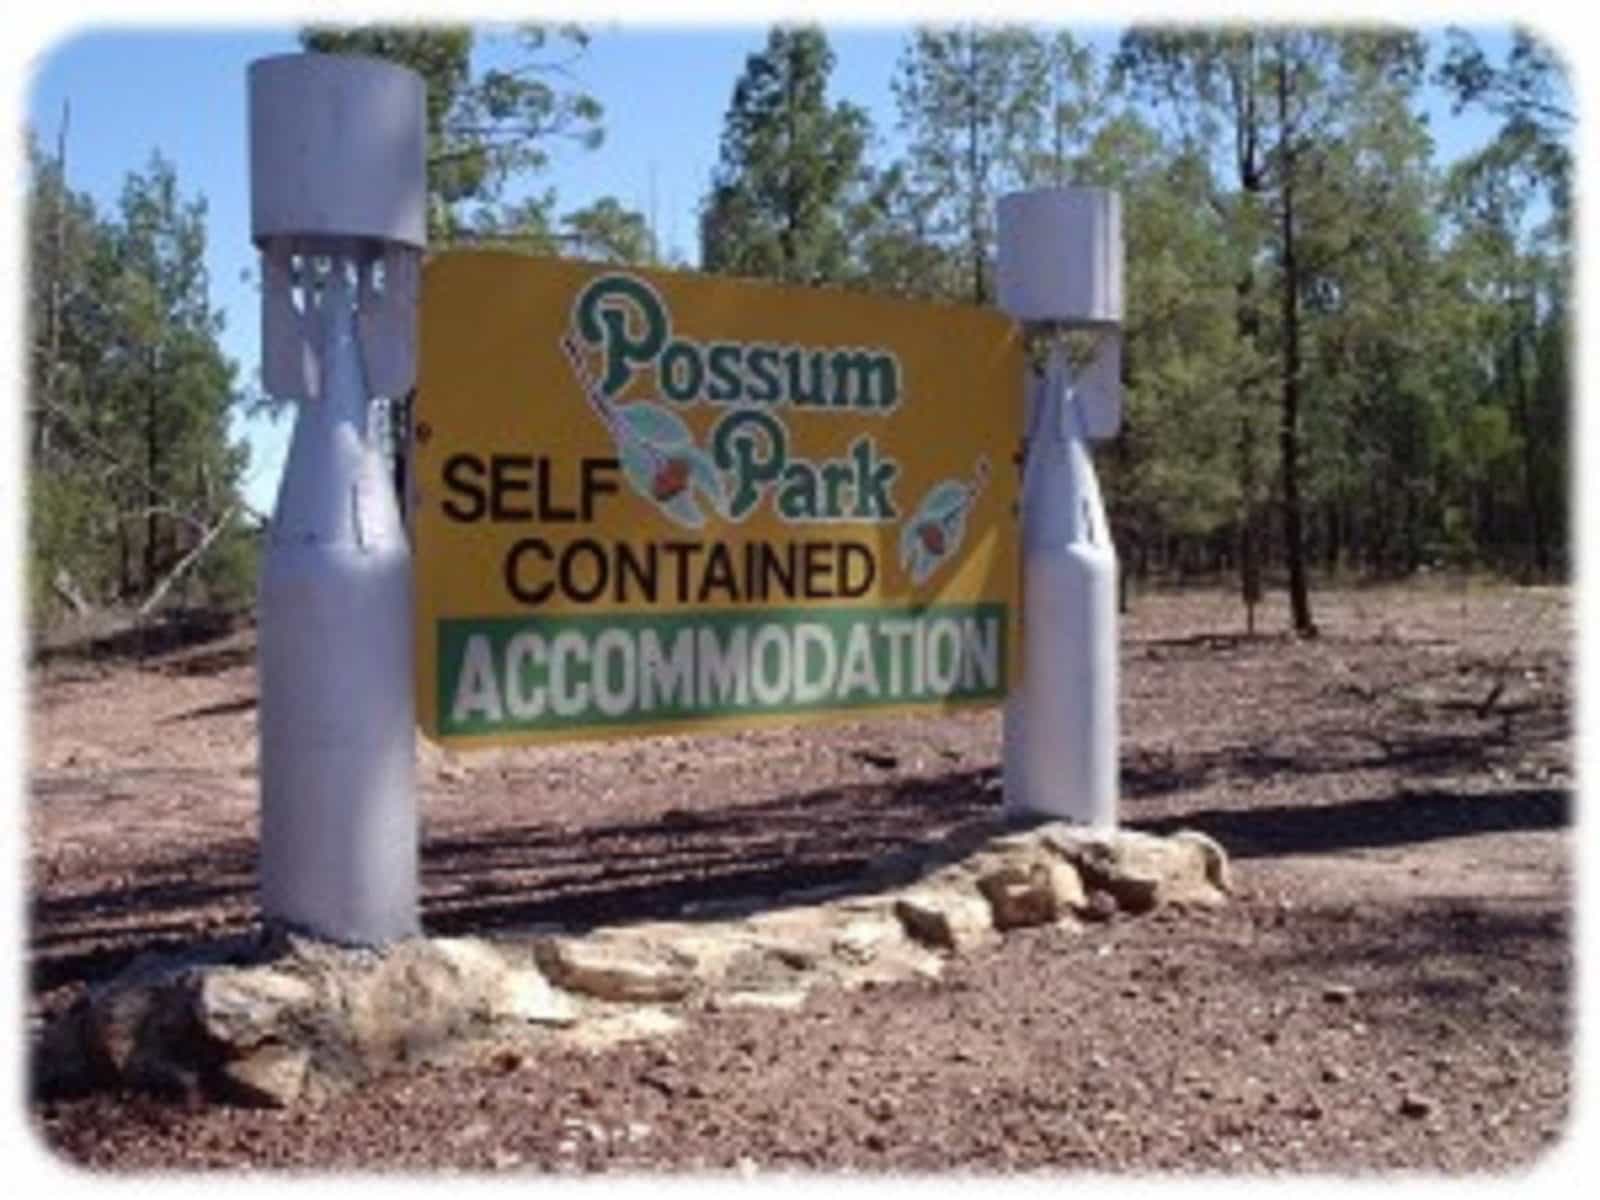 Entrance to Possum Park